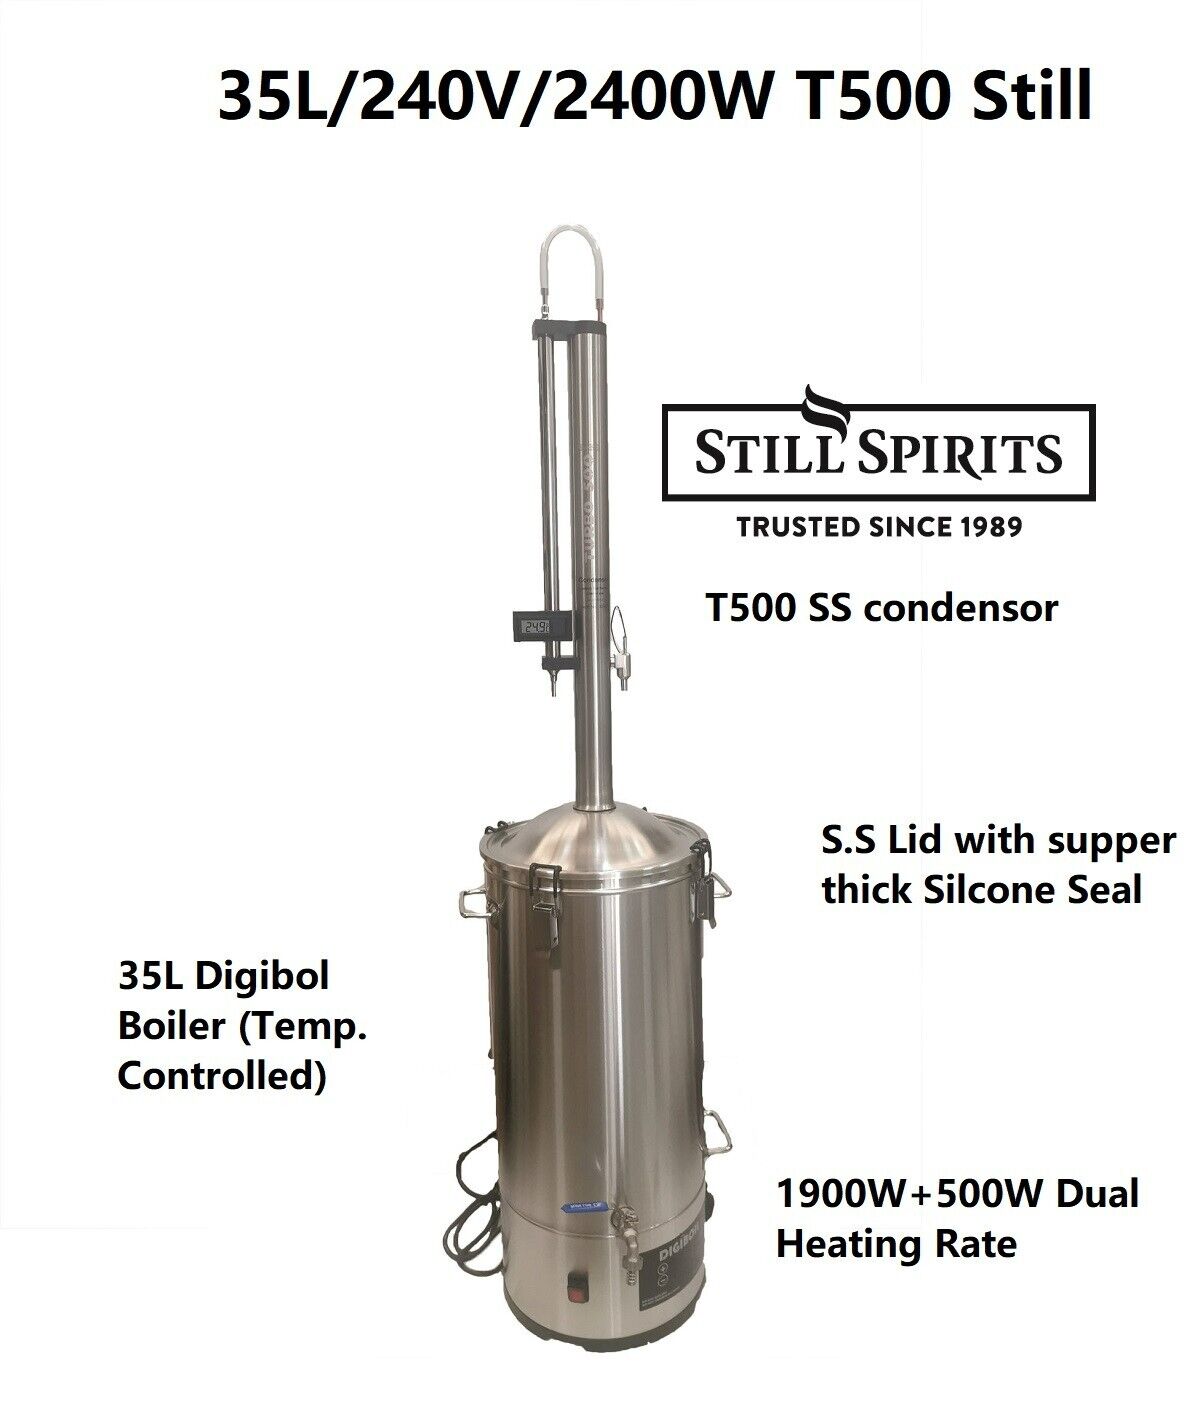 Still Spirits 35L/240V/2400W  T500 Stainles Steel Reflux Condensor Still Kit